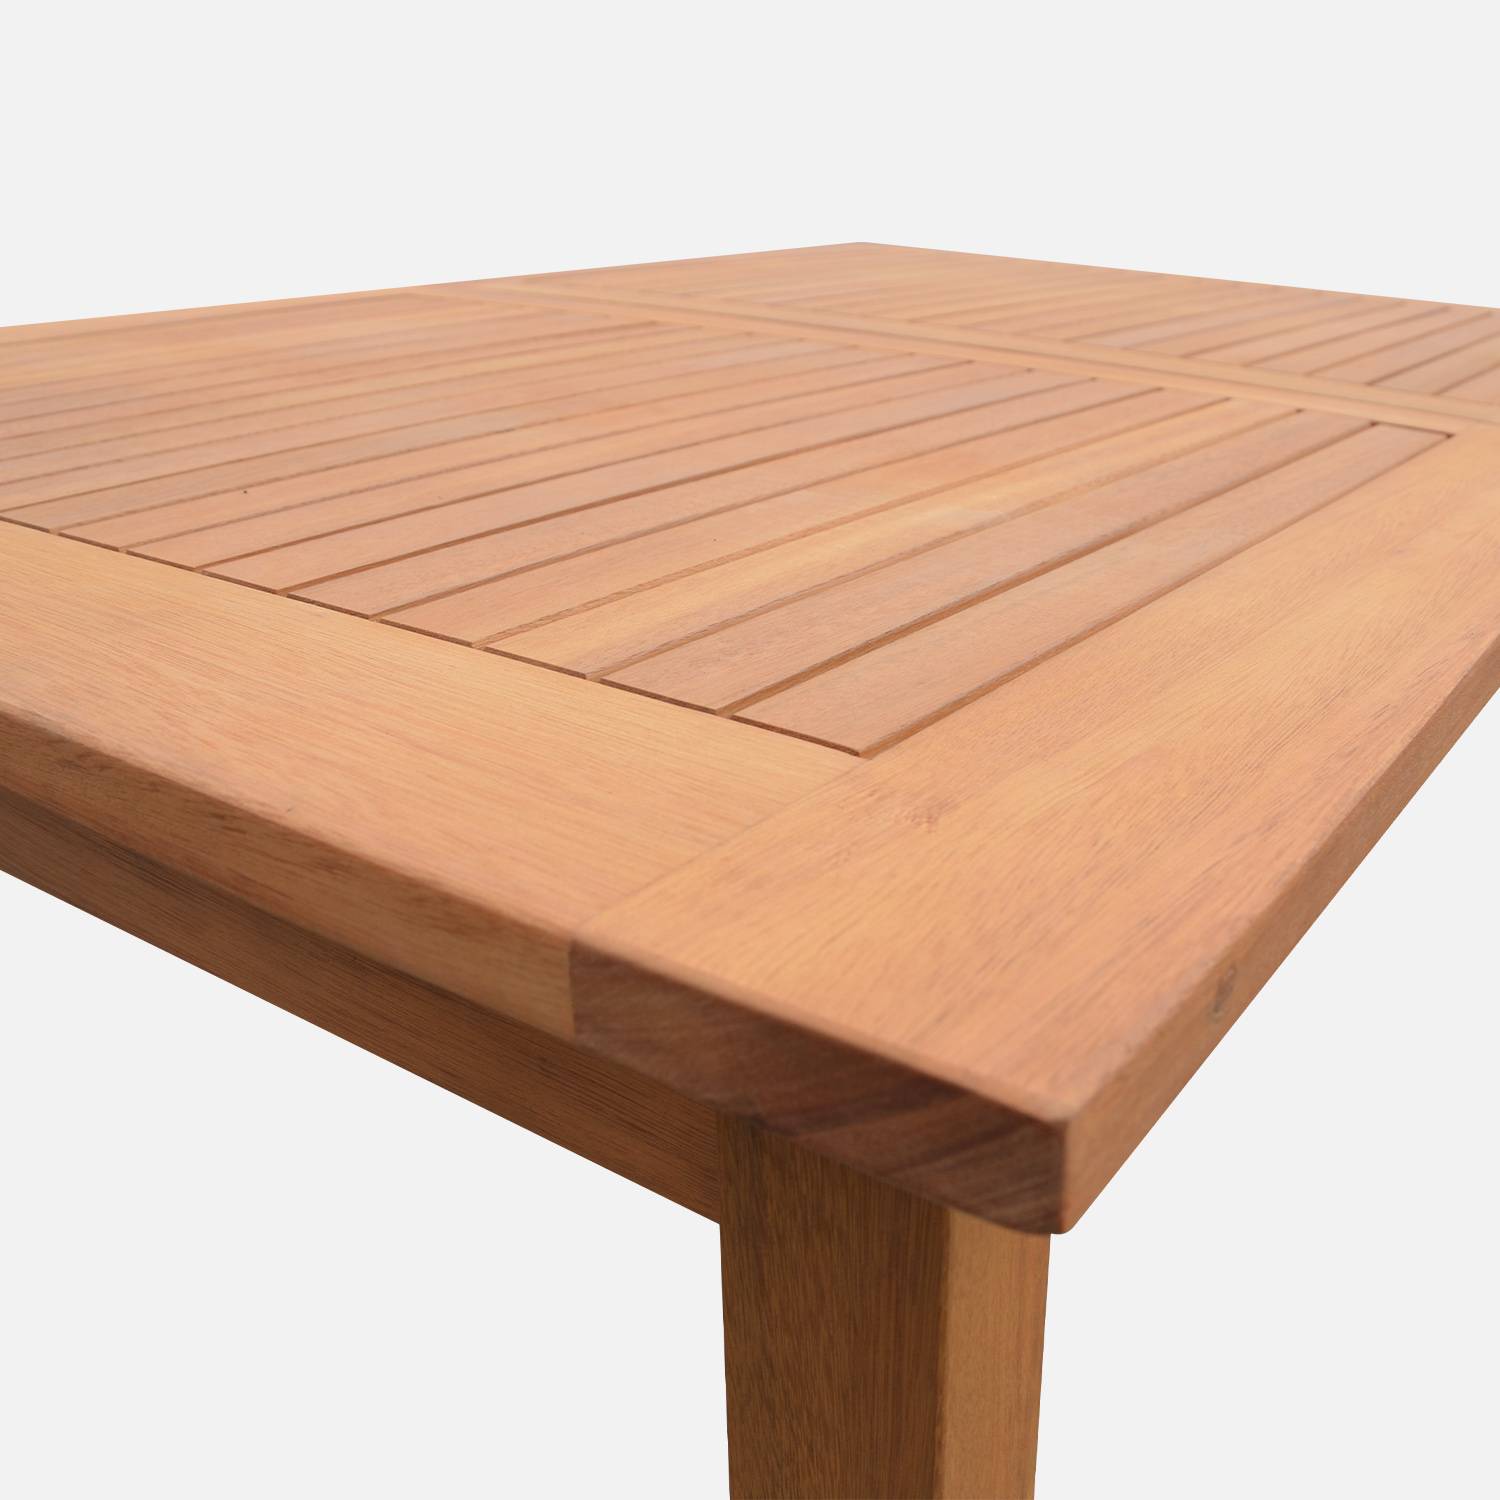 Tavolo da giardino, in legno, dimensioni: 120-180cm - modello: Almeria - Tavolo rettangolare con prolunga, eucalipto FSC Photo6